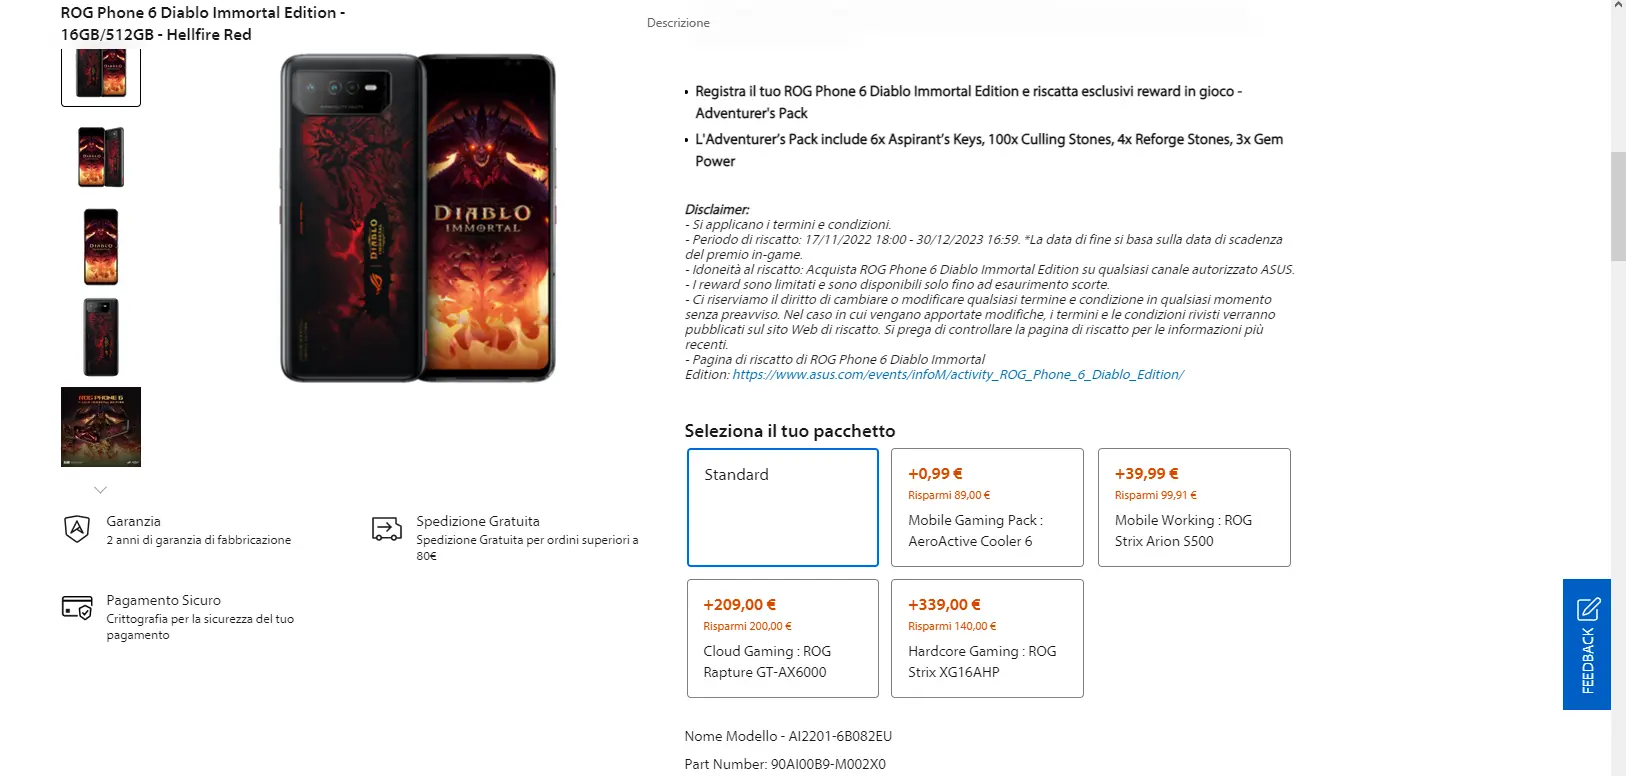 ASUS ROG Phone 6 Diablo Immortal Edition in sconto a 666 euro, grande offerta ma solo per pochi giorni!